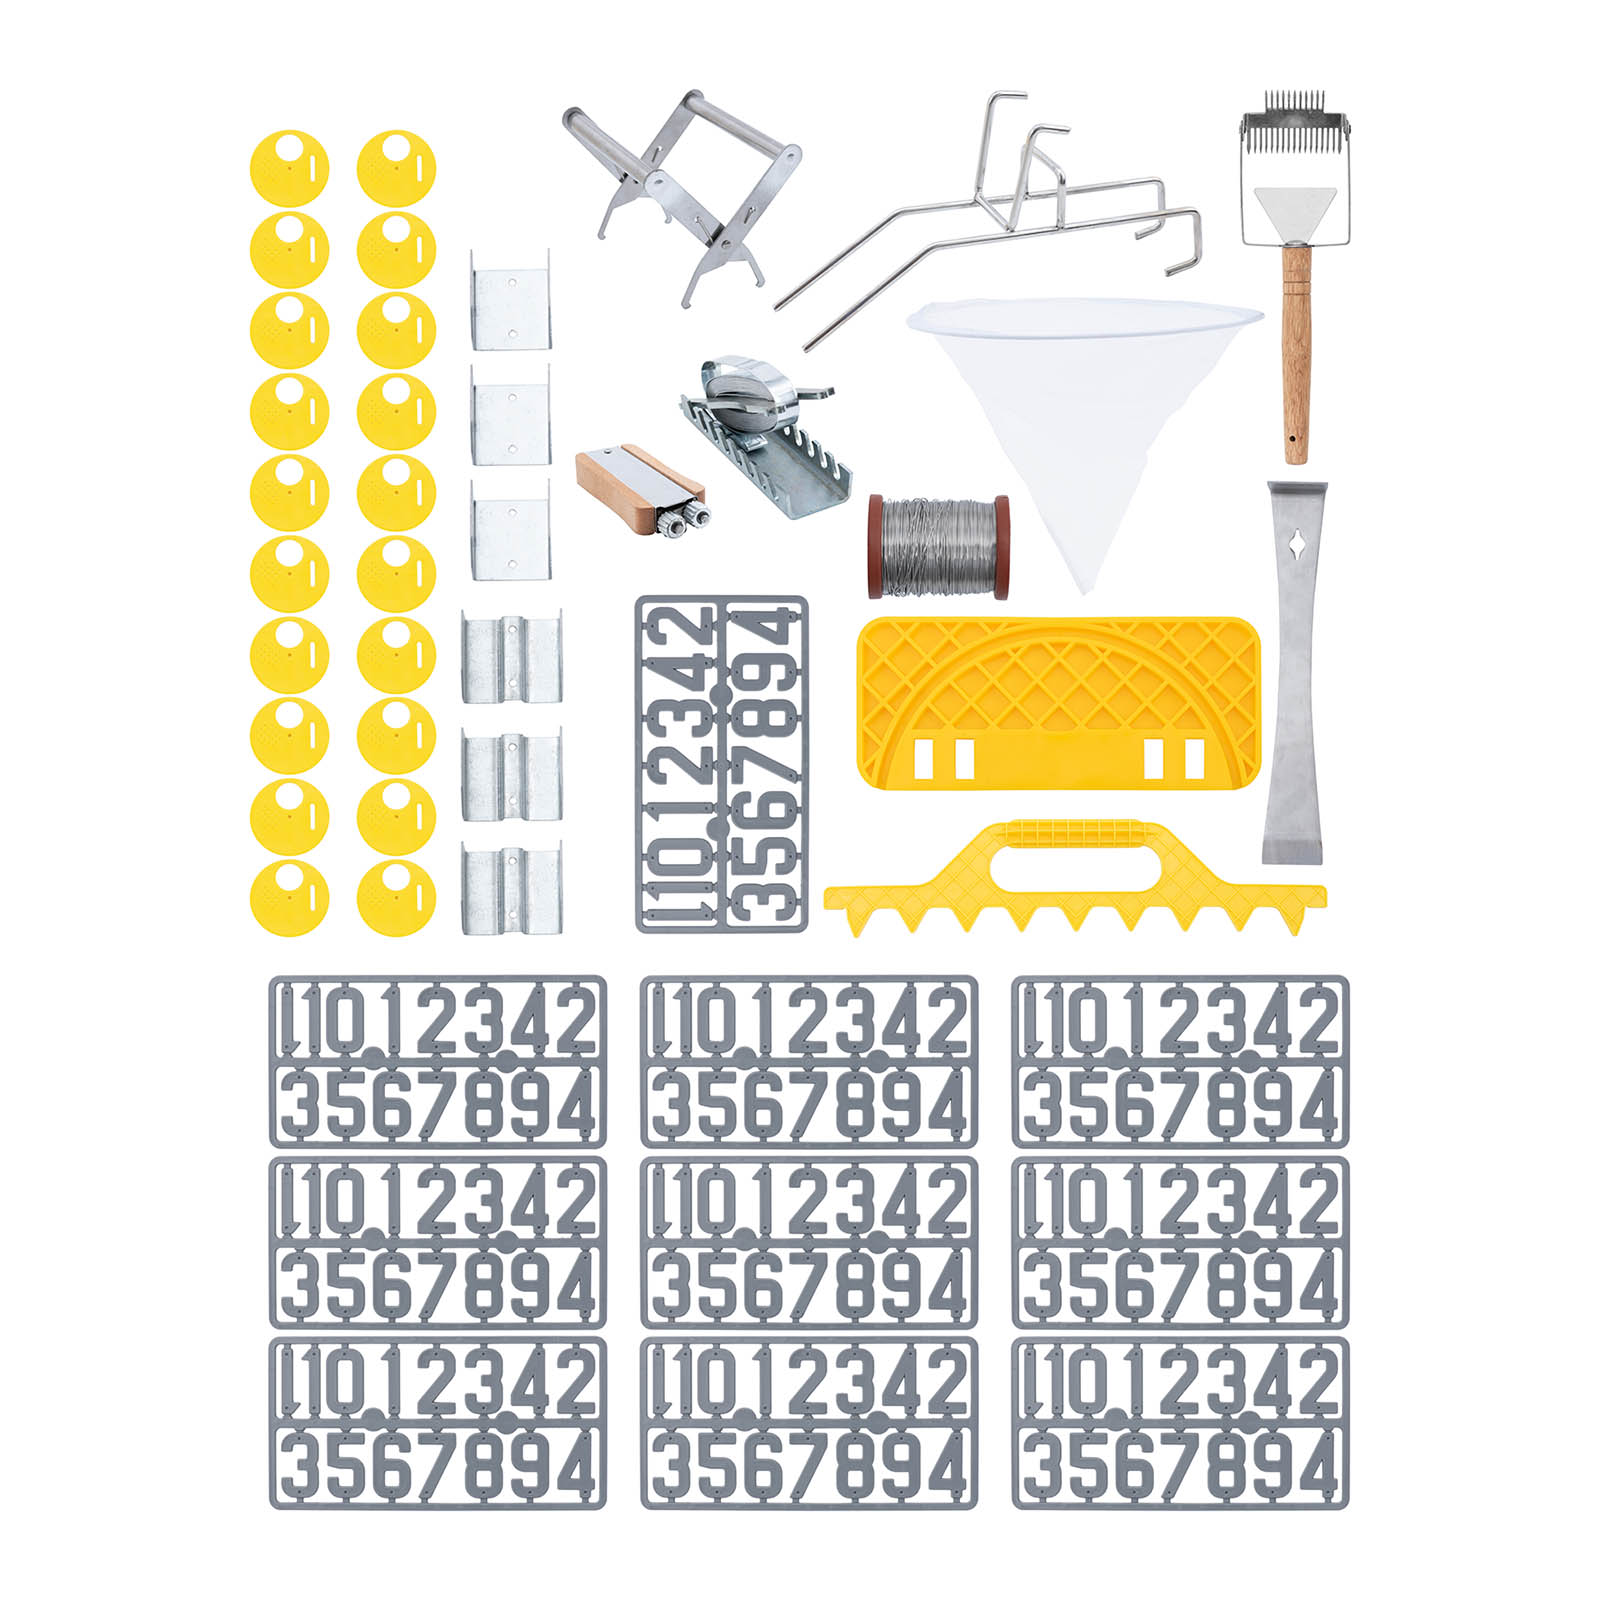 Méhész start csomag - 45 részes - kaptárvas - méhész drót - feszítő - heveder rakodó kaptárhoz - számjegyek - vödörtartó - fedelező eszköz | Wiesenfield